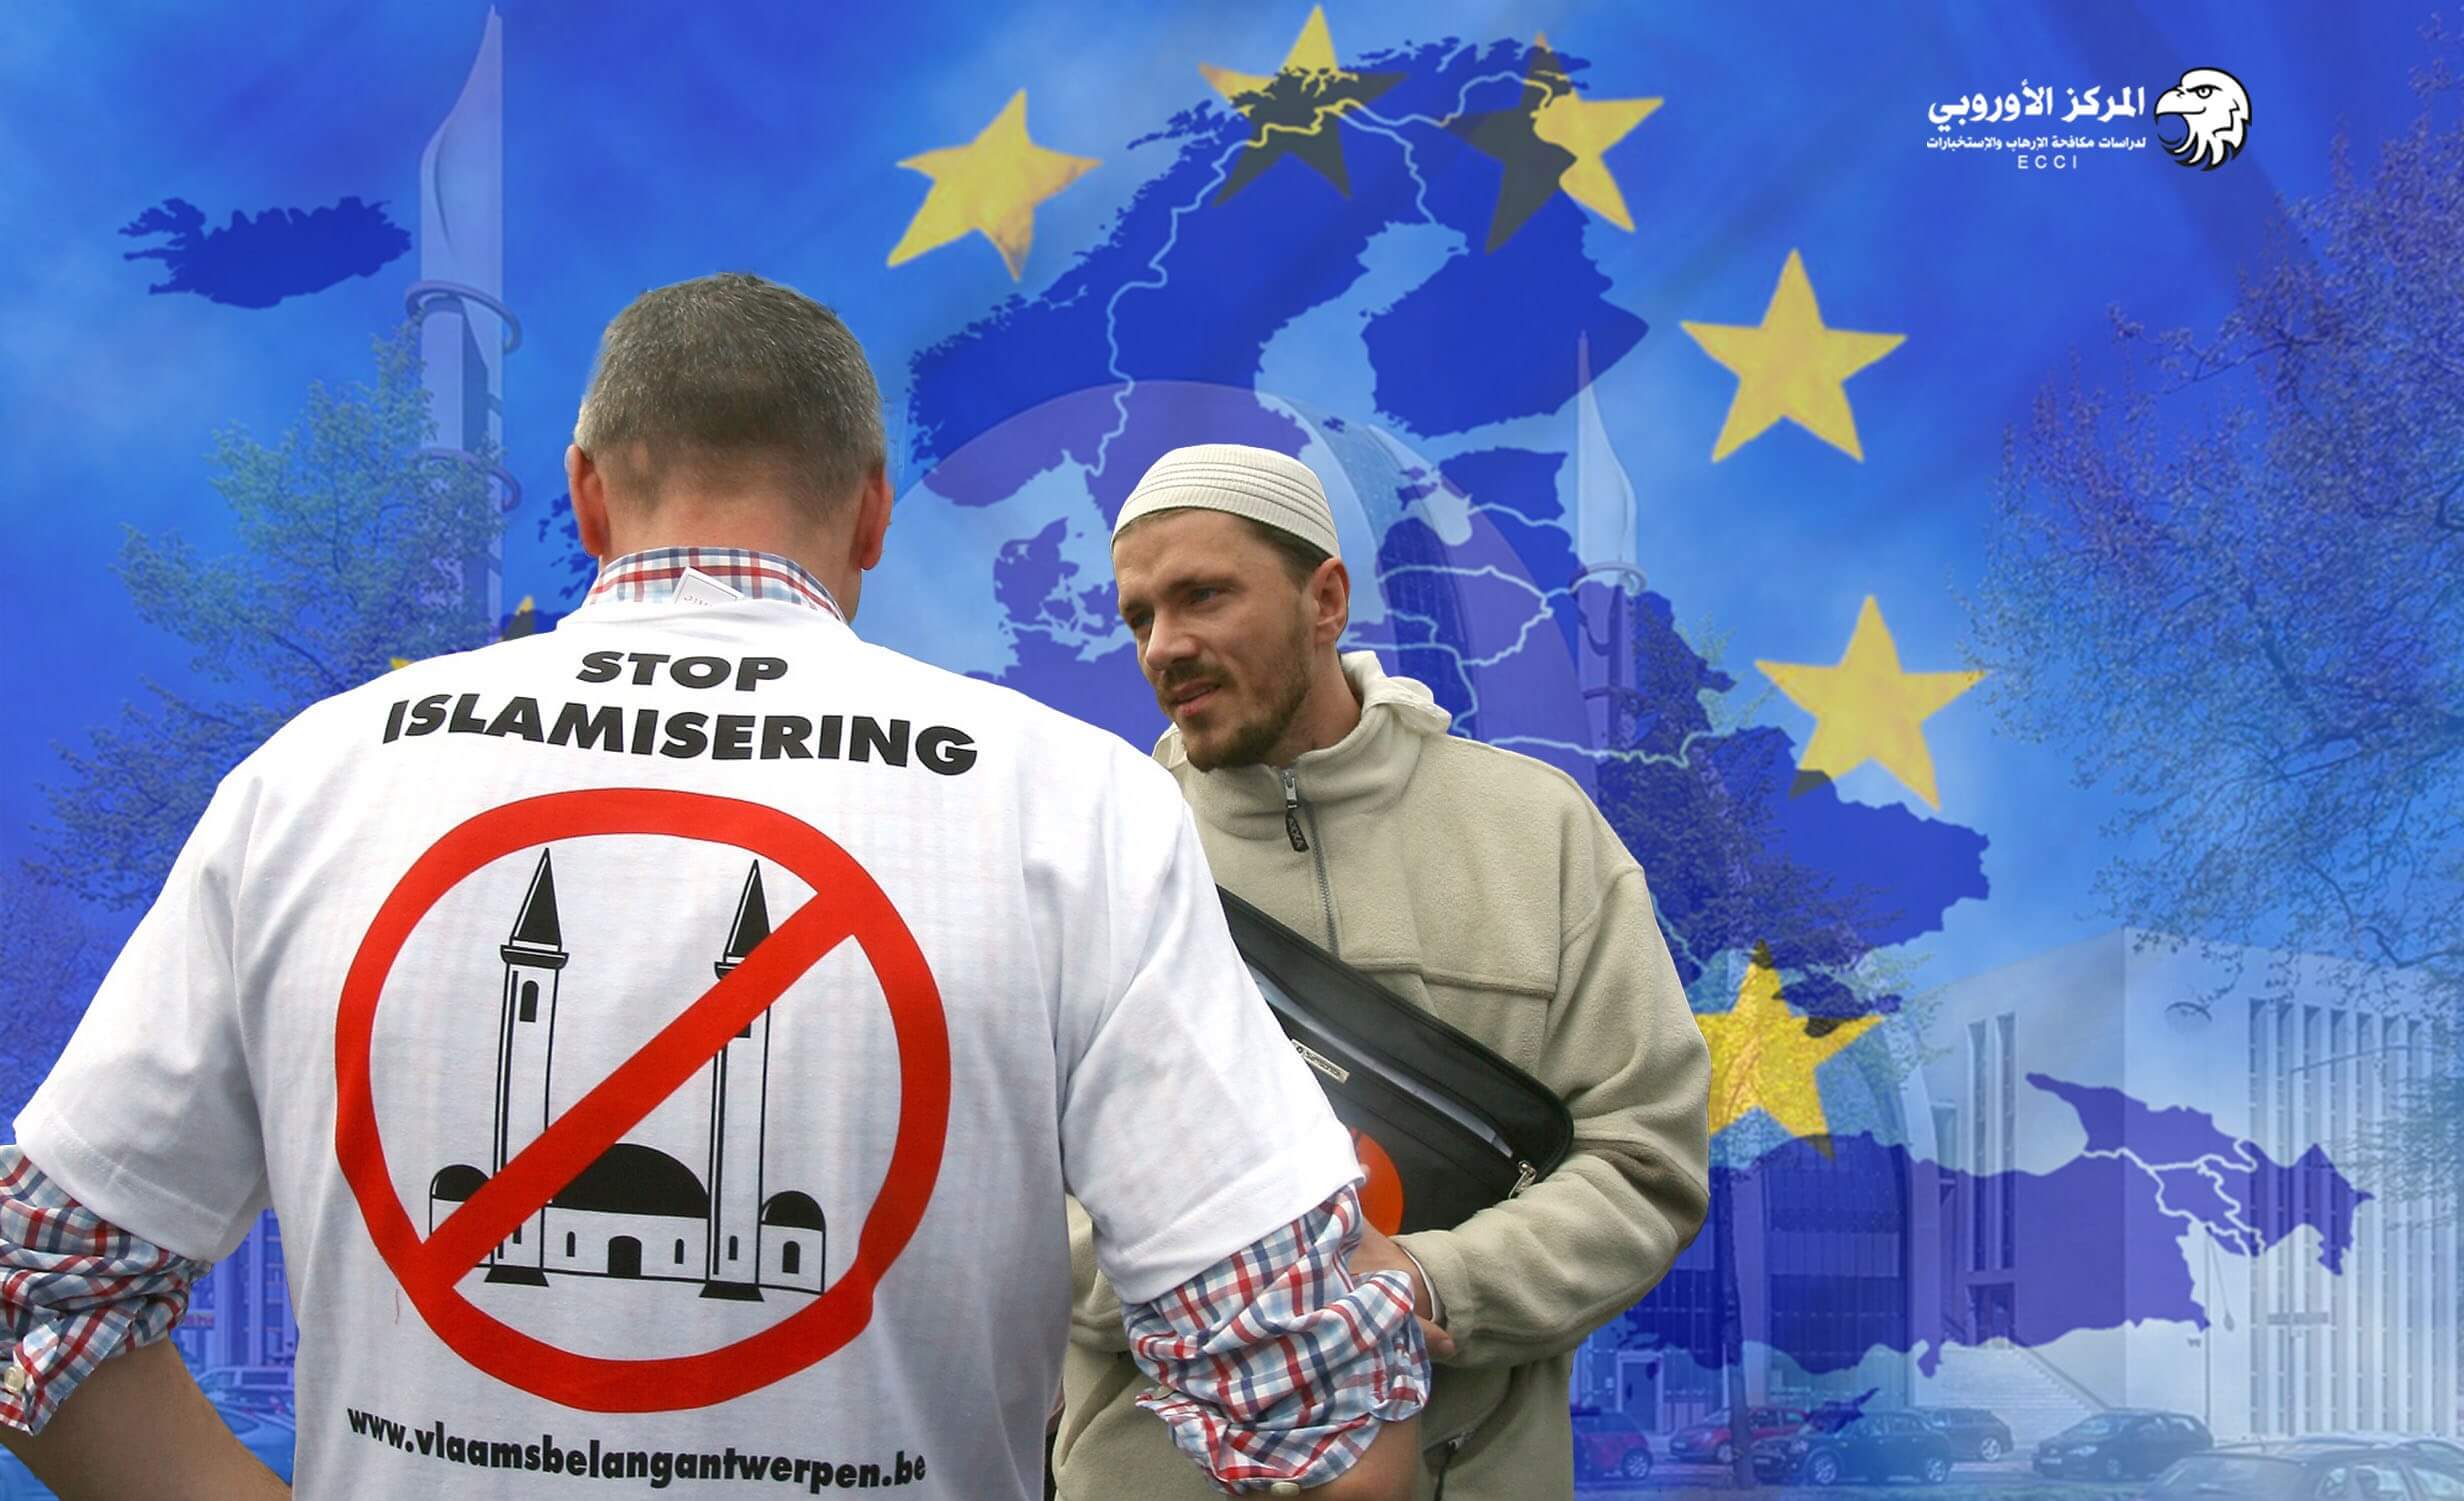 الإسلام السياسي في اوروبا